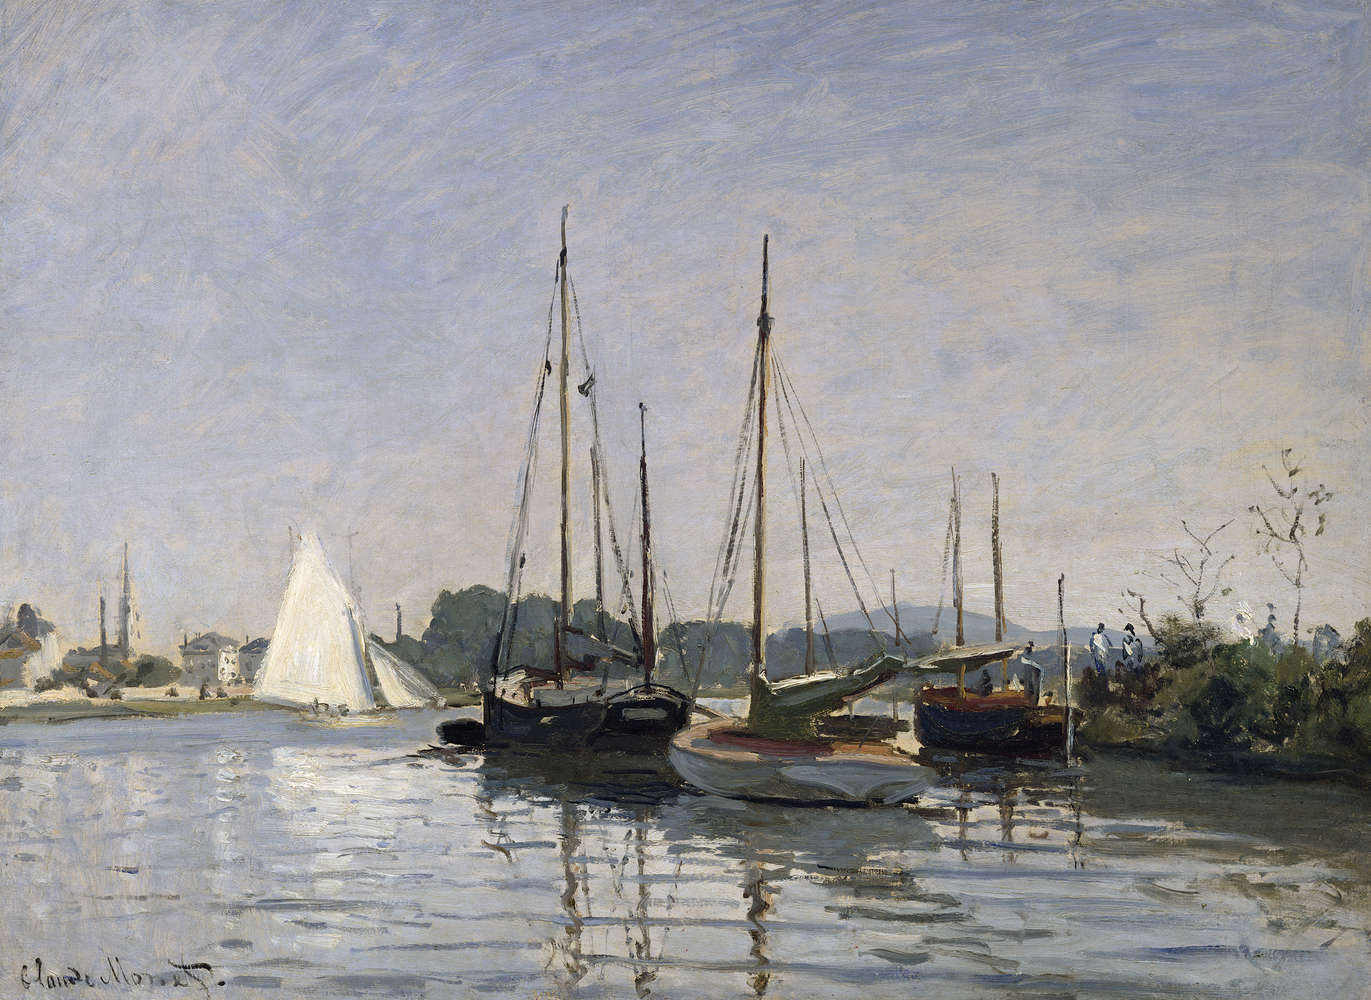             Papier peint panoramique "Bateaux de plaisance, Argenteuil" de Claude Monet
        